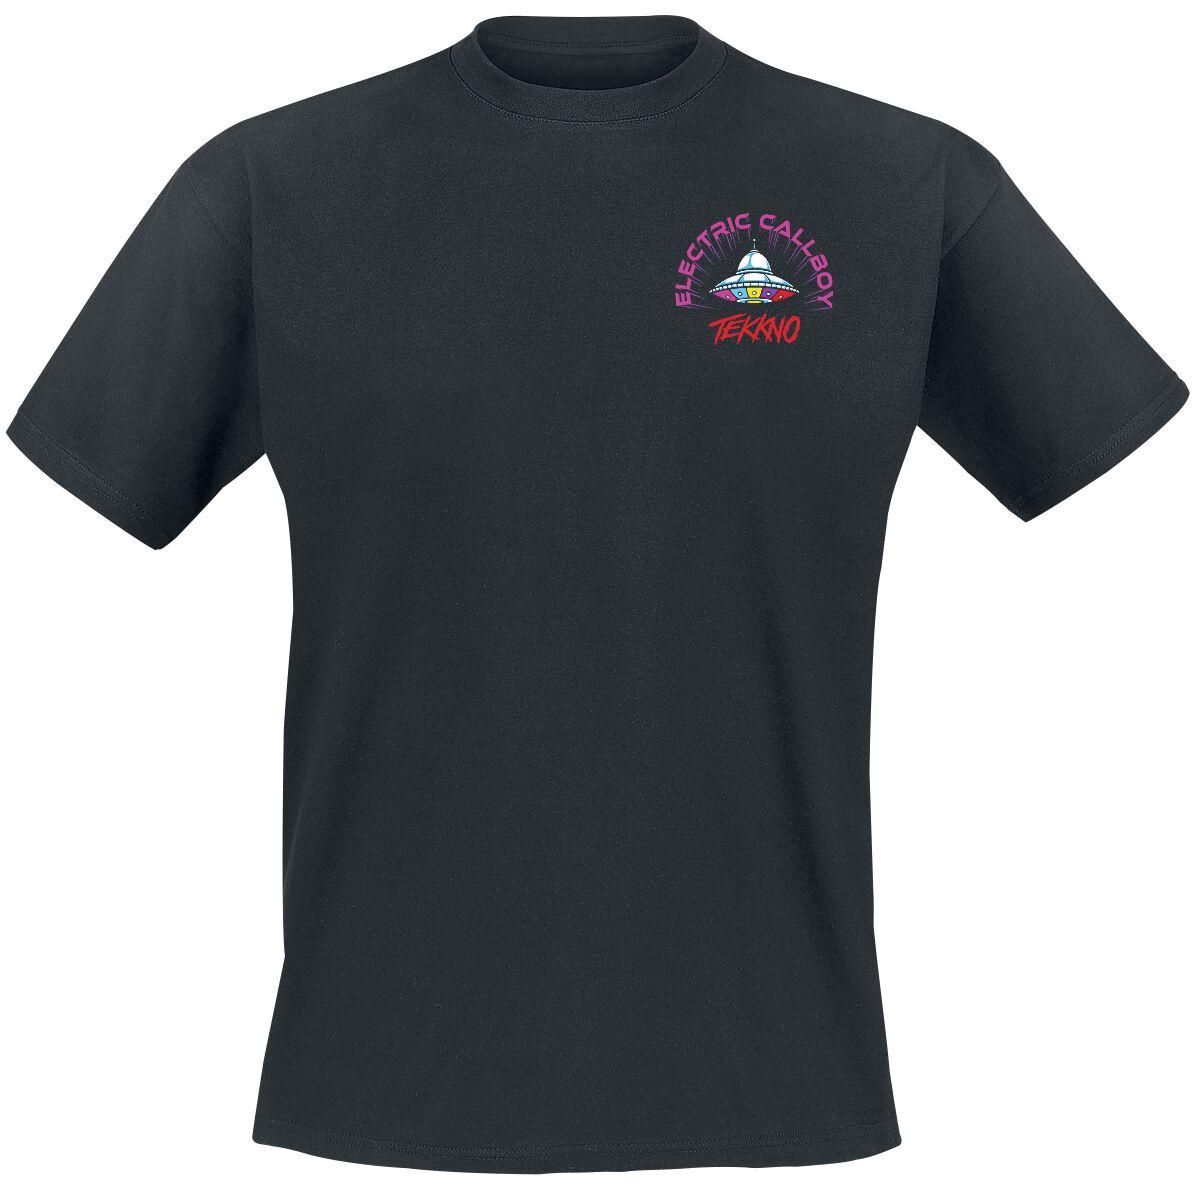 Electric Callboy T-Shirt - Tekkno Pinball - S bis 3XL - für Männer - Größe S - schwarz  - Lizenziertes Merchandise!